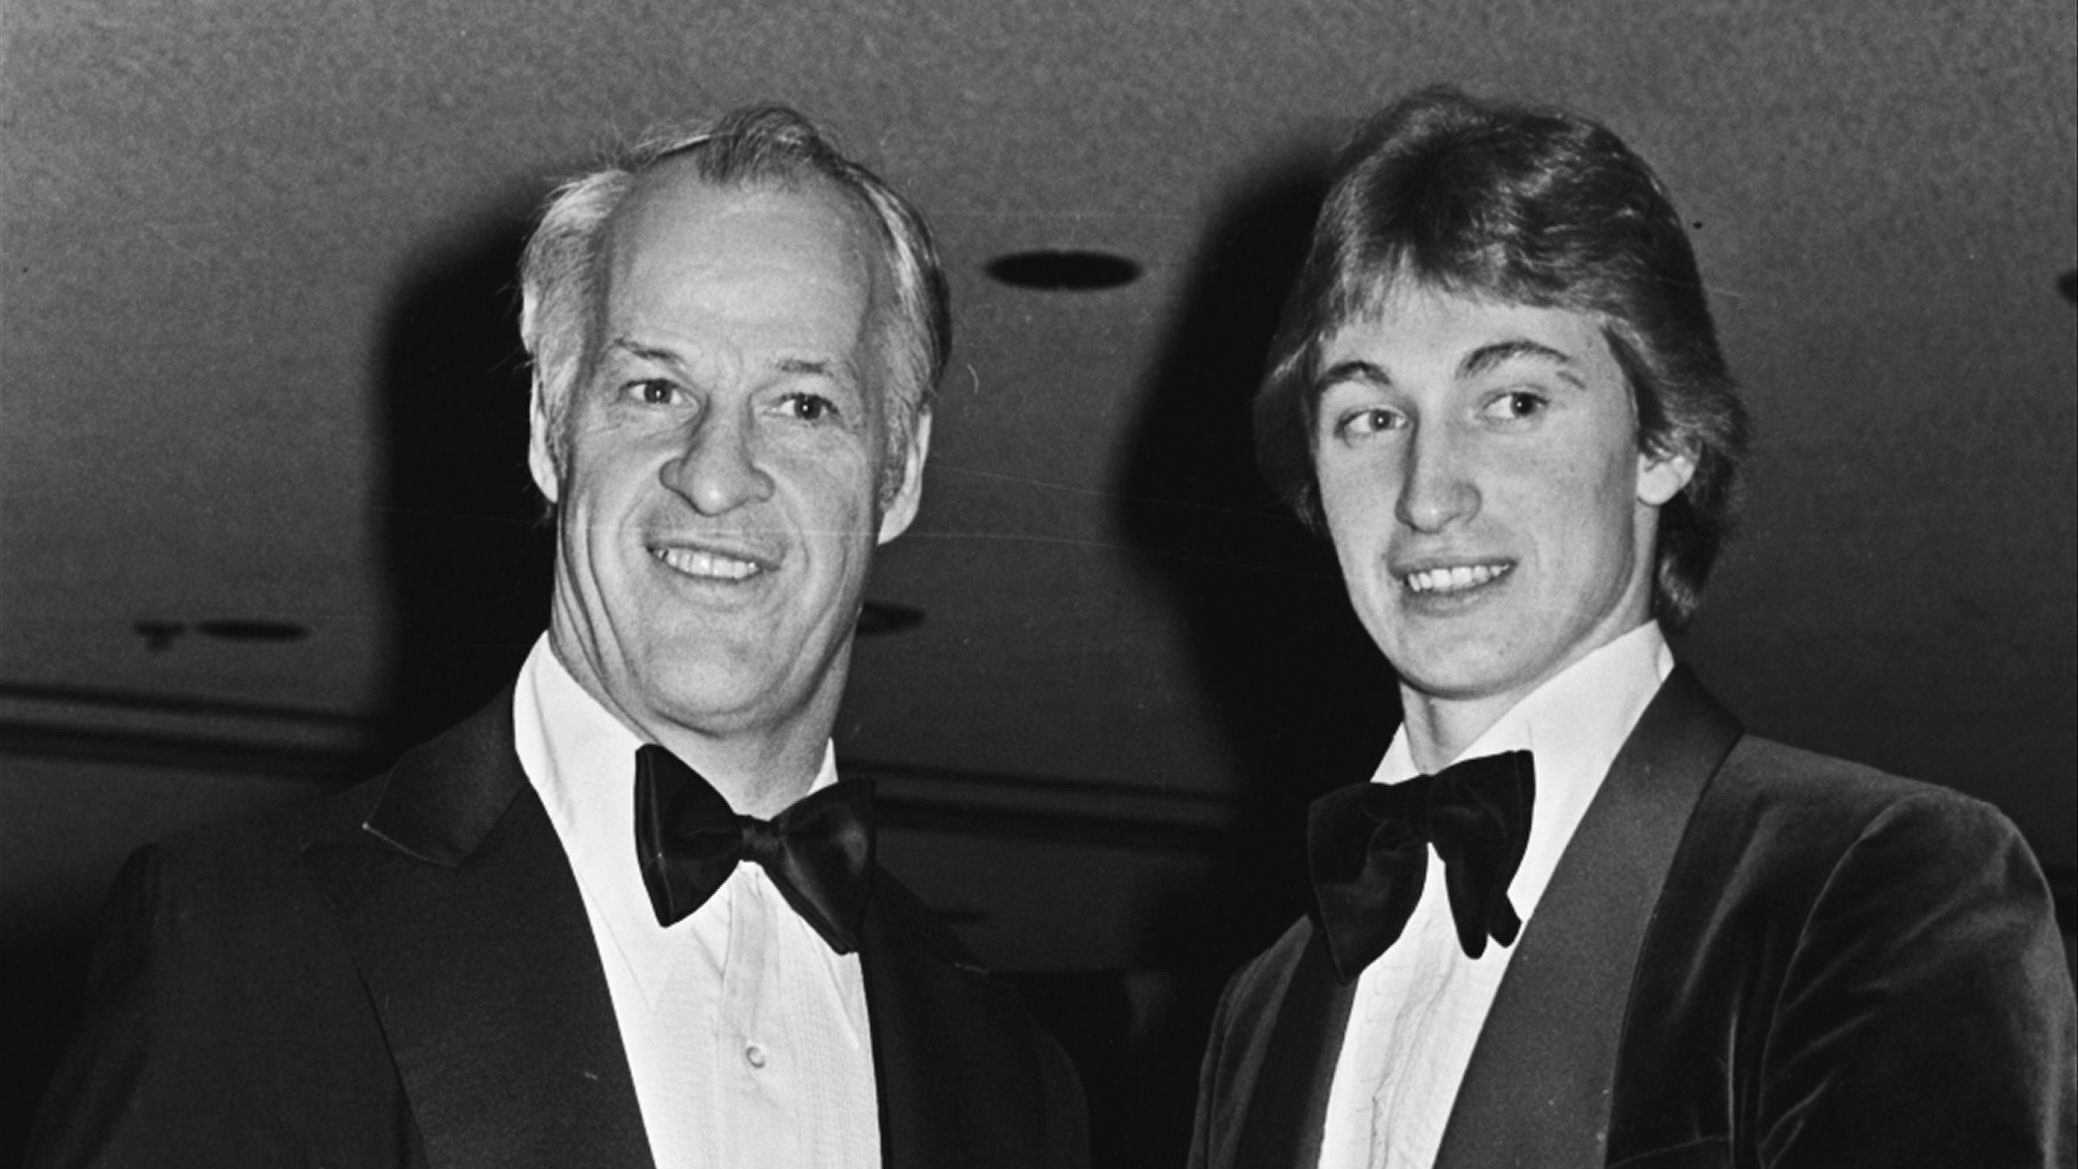 Gretzky tells stories of meeting his idol, Gordie Howe